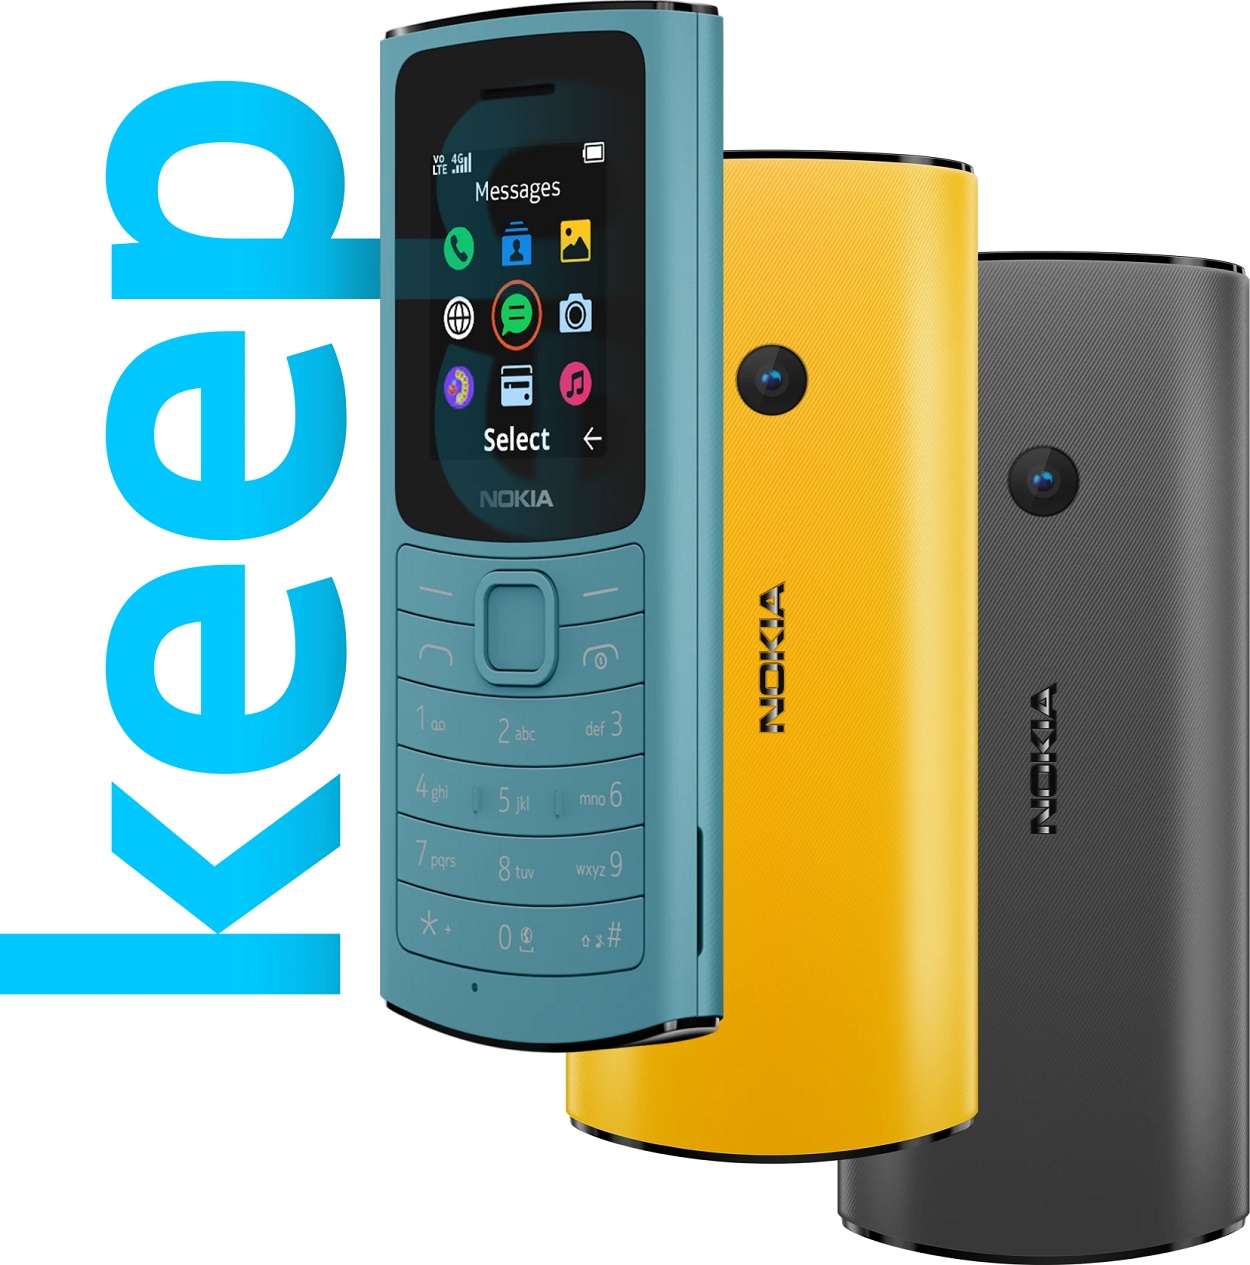 Nokia Mobile launches Nokia 110 4G & Nokia 105 4G. Details inside -  Nokiapoweruser